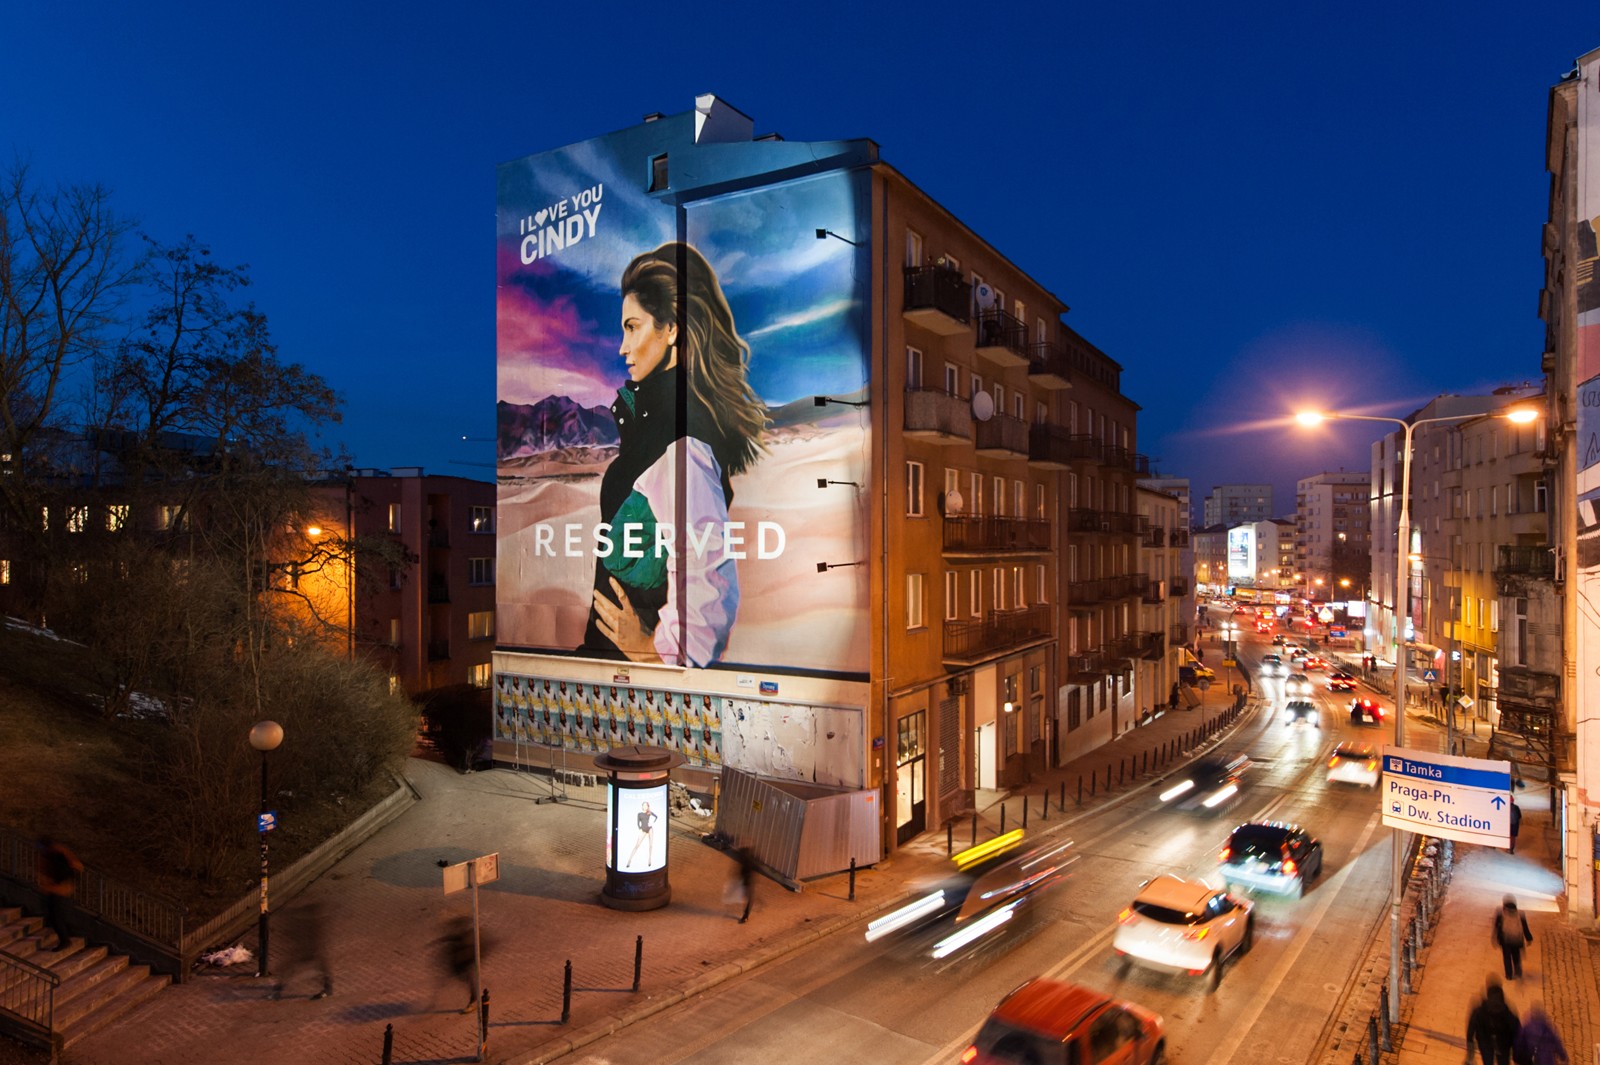 Tamka na warszawskim Powiślu mural reklamowy na zlecenie Reserved | I love You Cindy | Portfolio